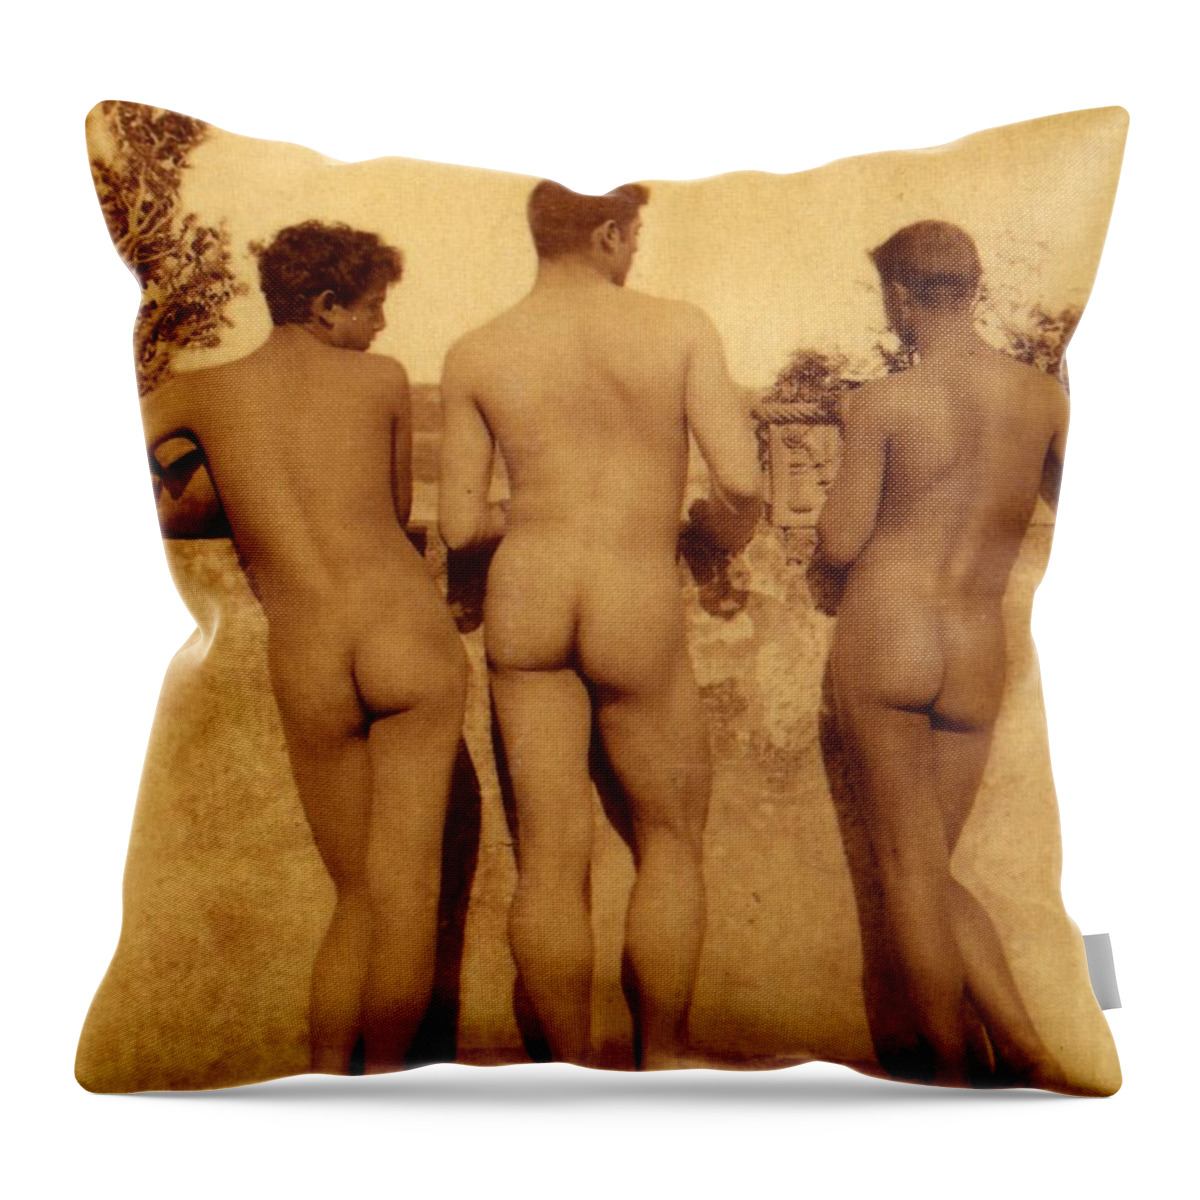 Gloeden Throw Pillow featuring the photograph Study of Three Male Nudes by Wilhelm von Gloeden